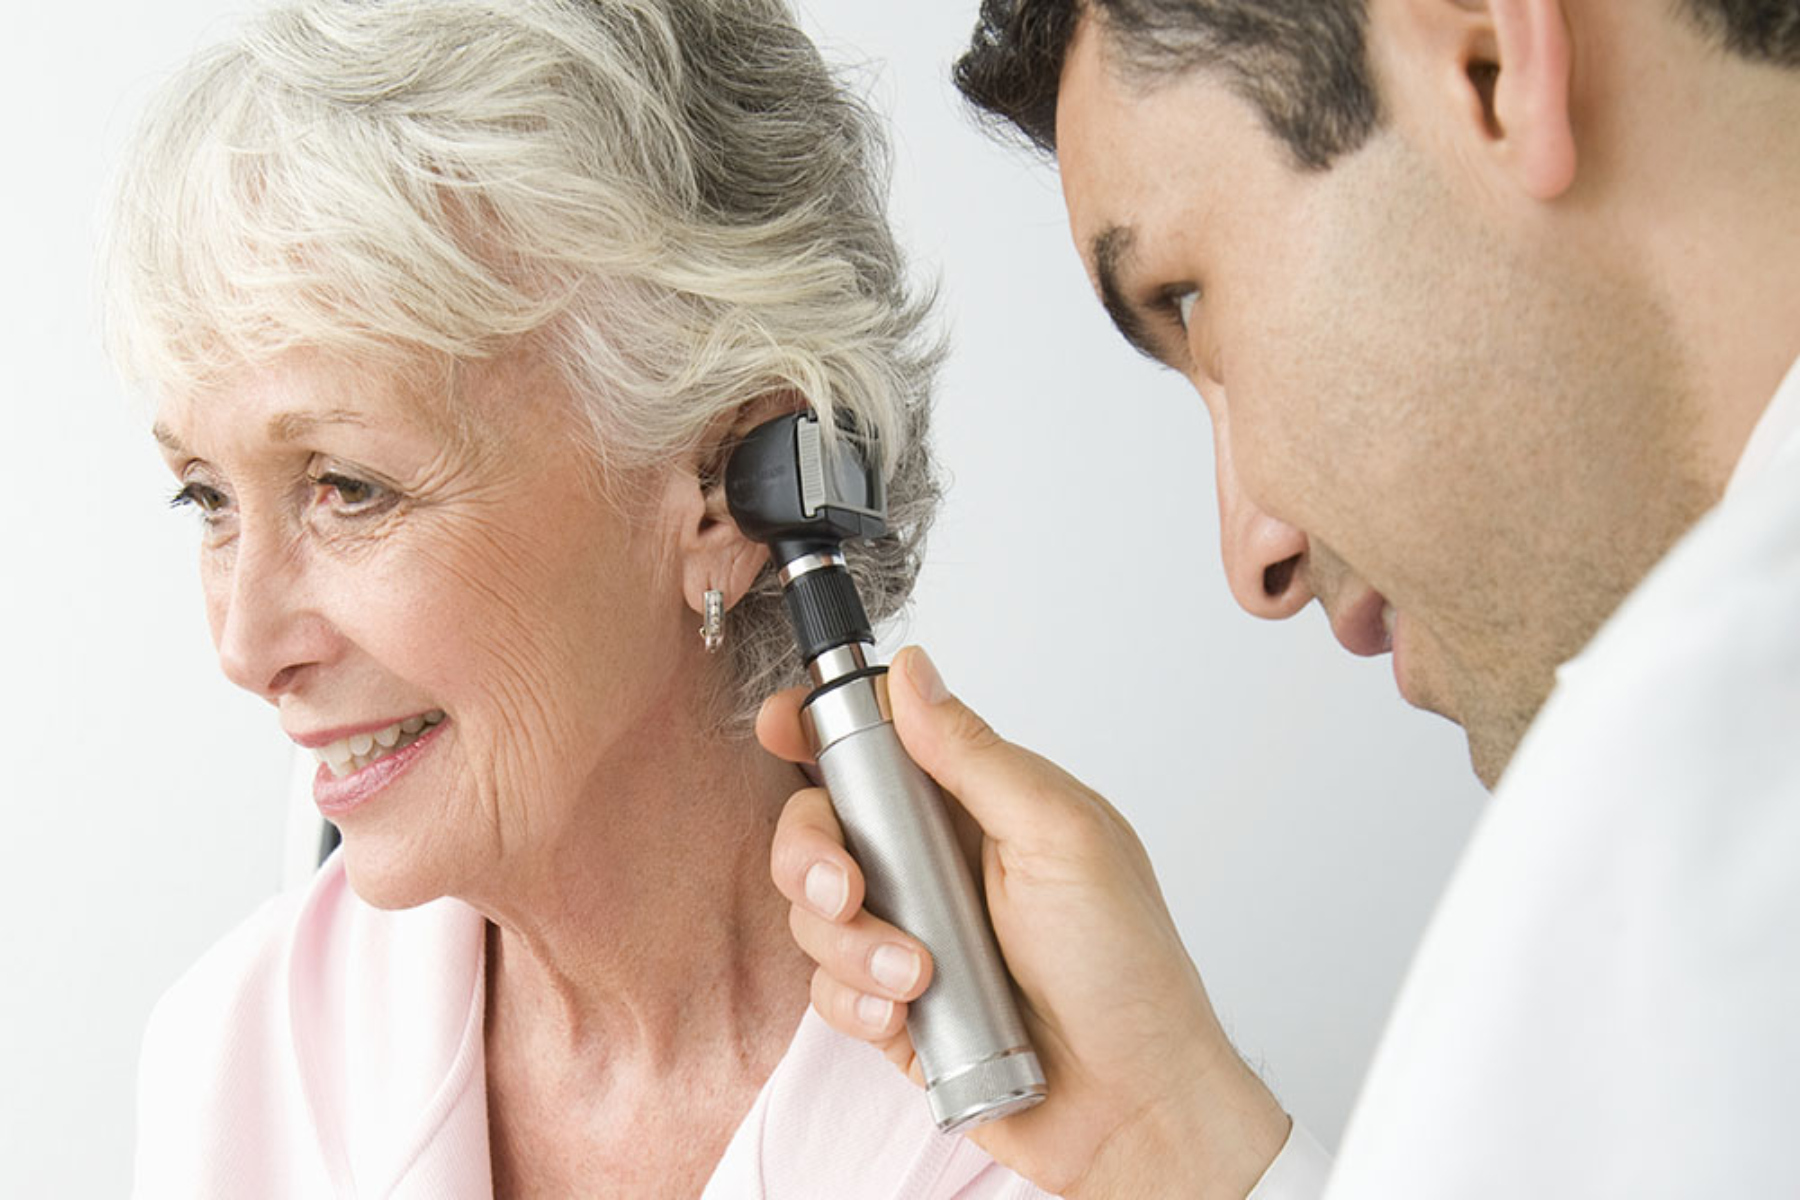 Τεχνολογία: Ποιες θεραπείες μπορεί να ακολουθήσει όποιος έχει πρόβλημα ακοής;